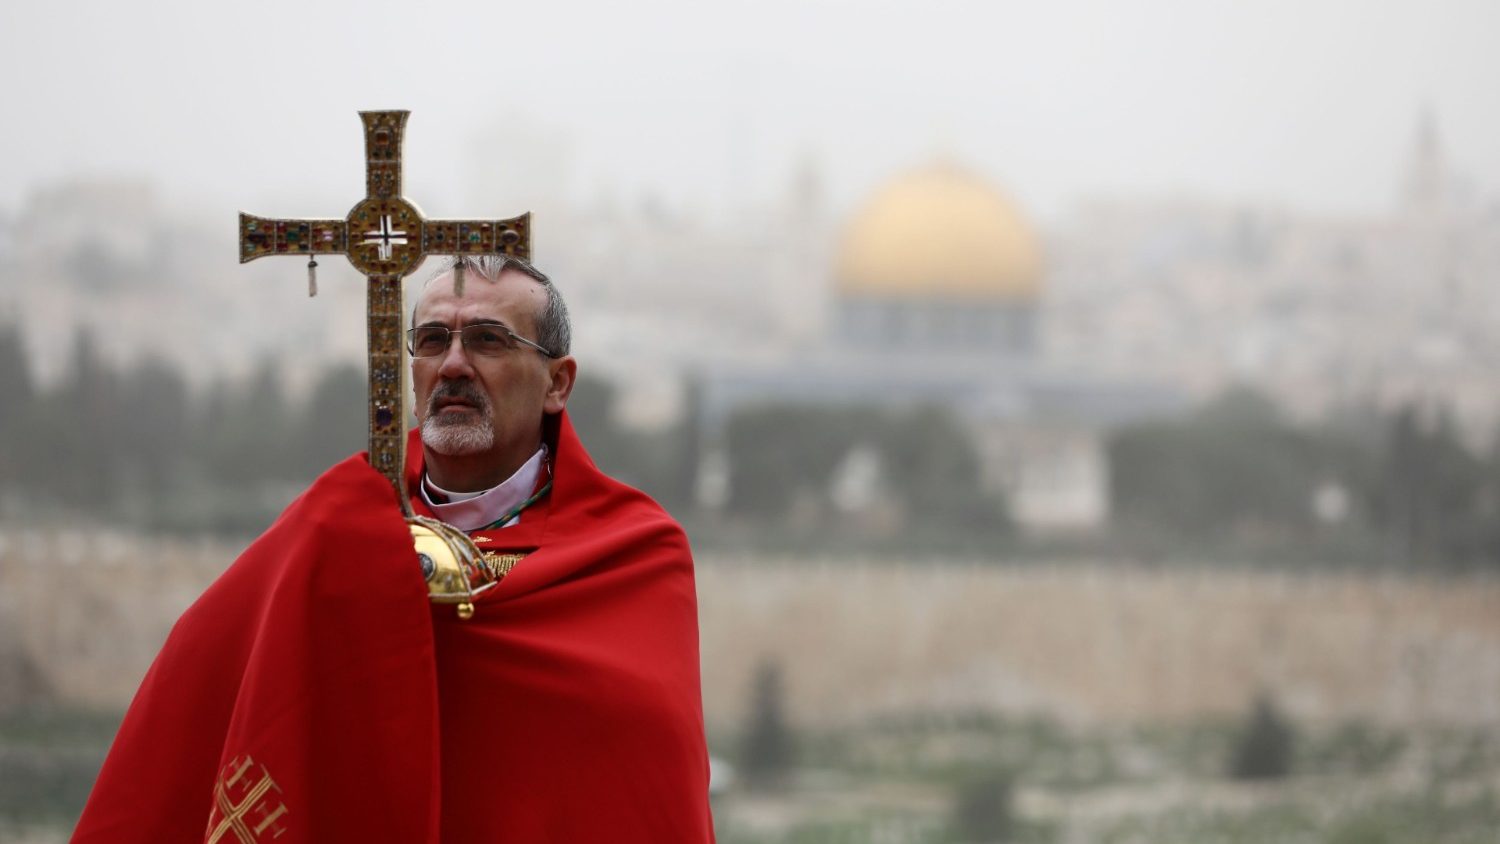 La 'chiesa degli arabi' dovrebbe essere unita e non dividersi in tante chiese 'etniche'